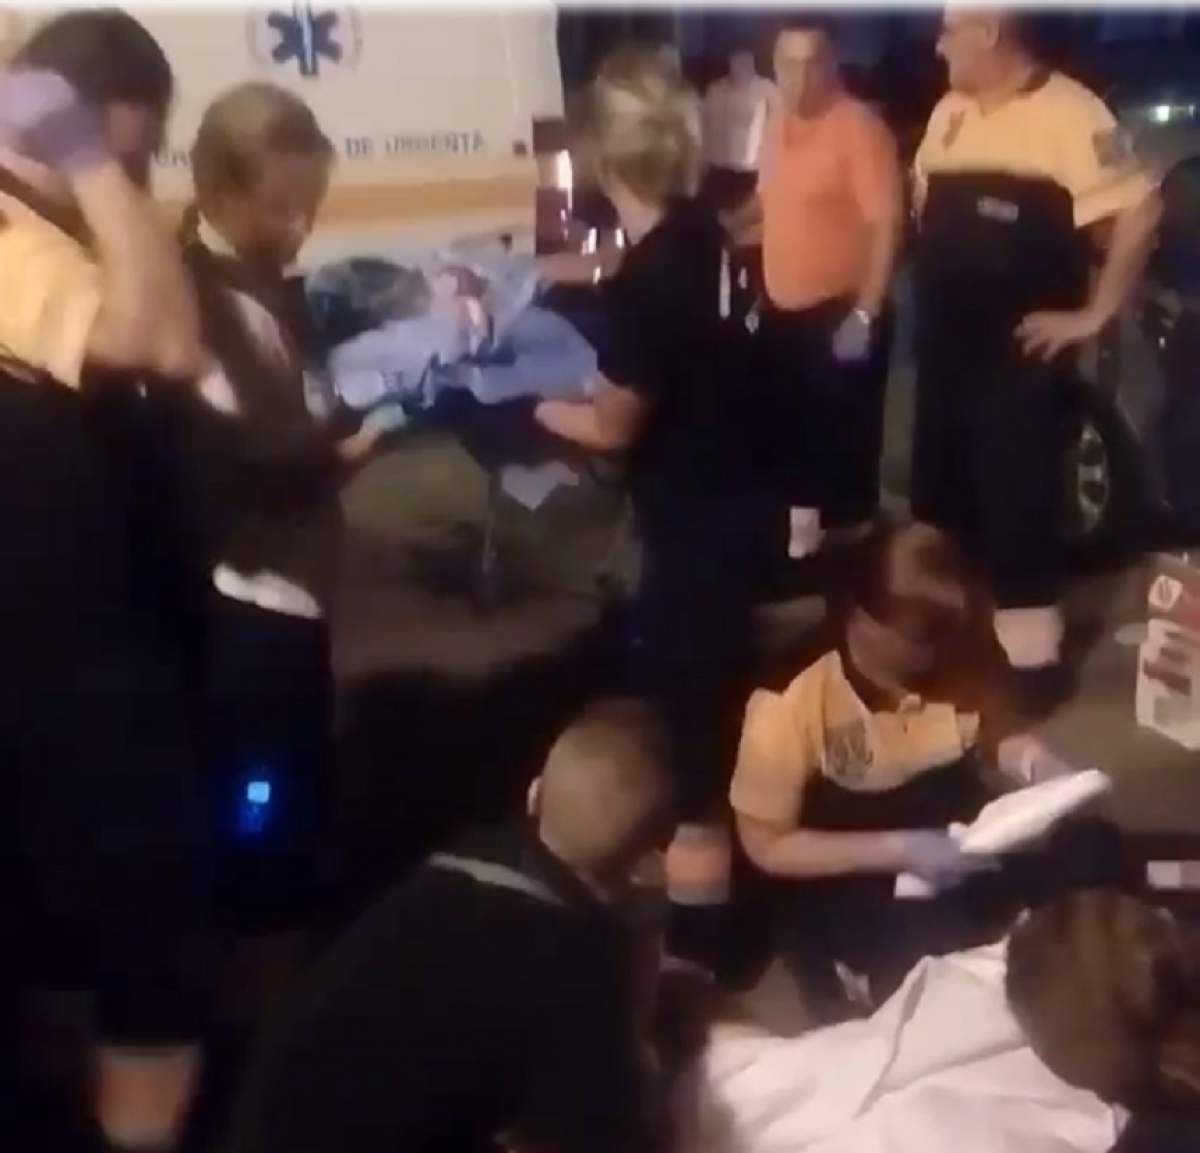 EMOŢIONANT! O româncă n-a mai ajuns la spital şi a născut chiar în faţa blocului. Întreaga scenă a fost filmată